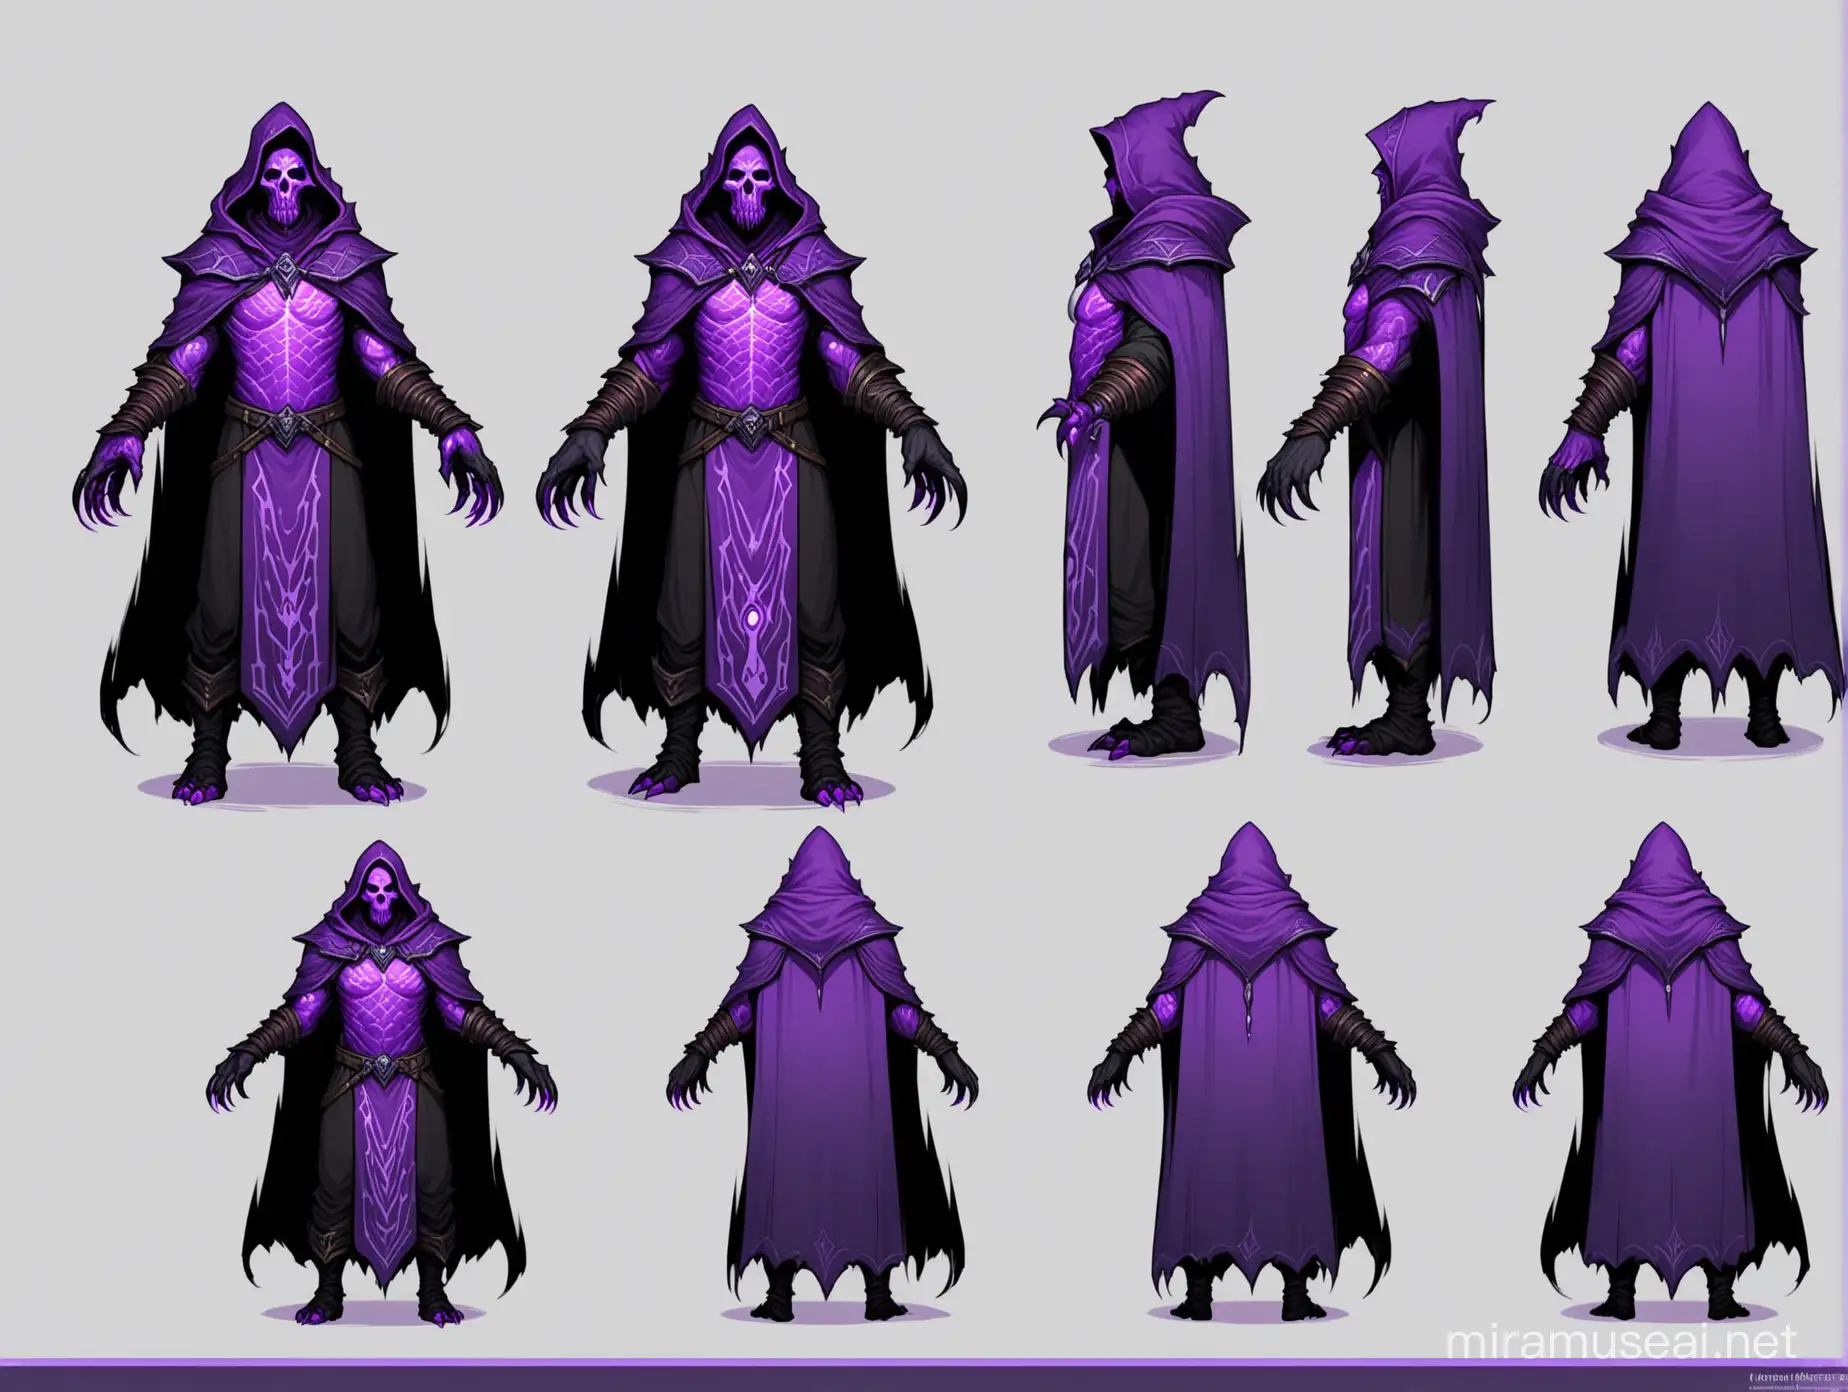 Purple Dwarven Necromancer with Oversized Hands in Blizzard Art Style